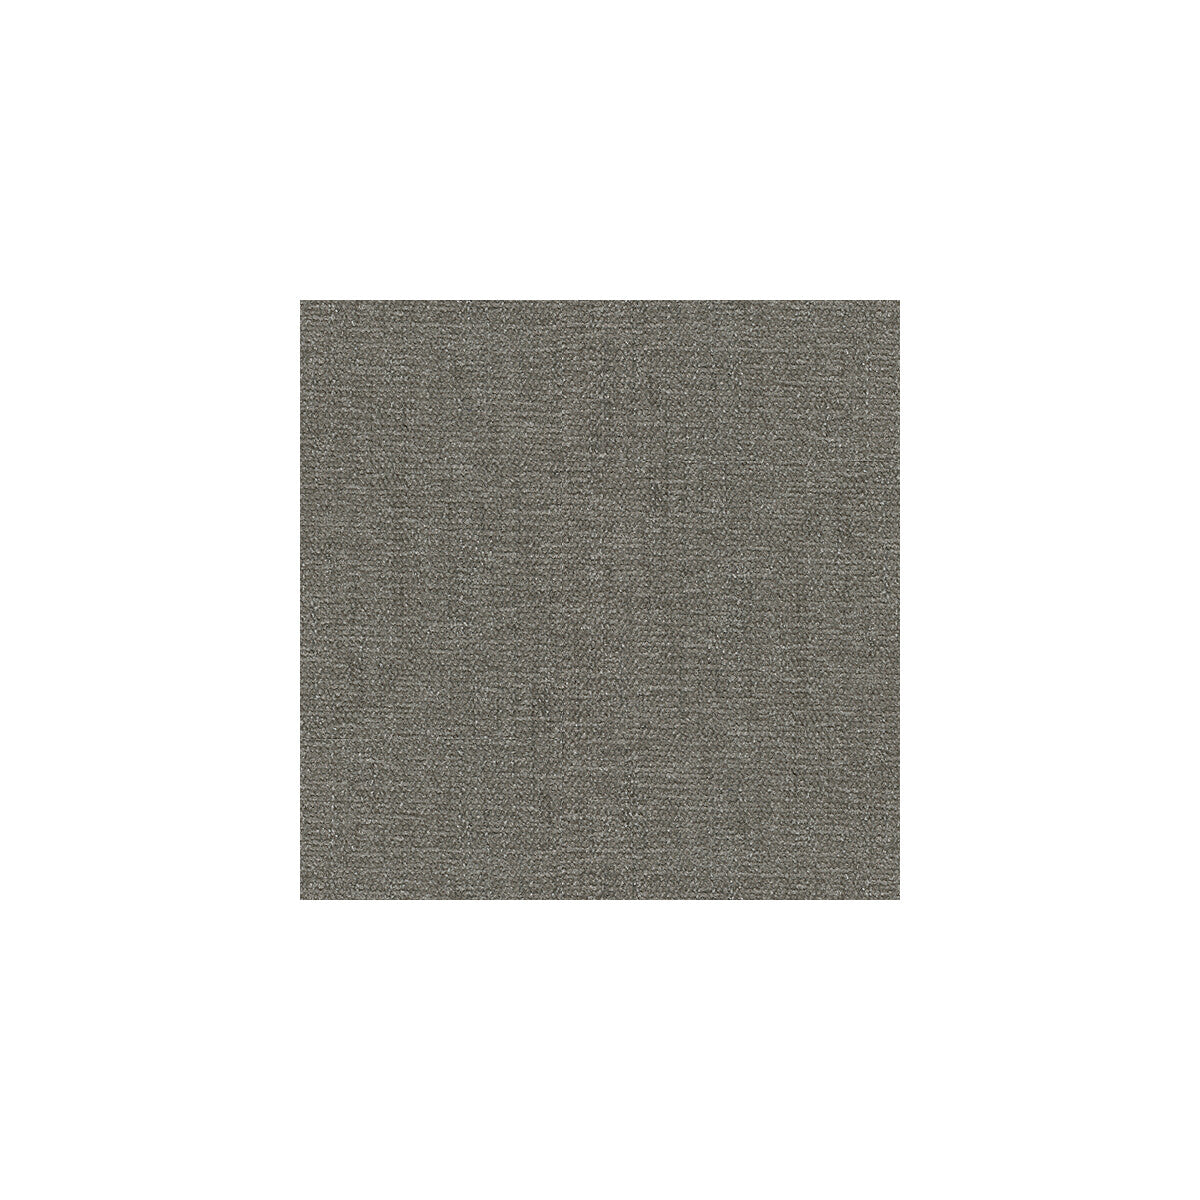 Kravet Basics fabric in 26837-11 color - pattern 26837.11.0 - by Kravet Smart